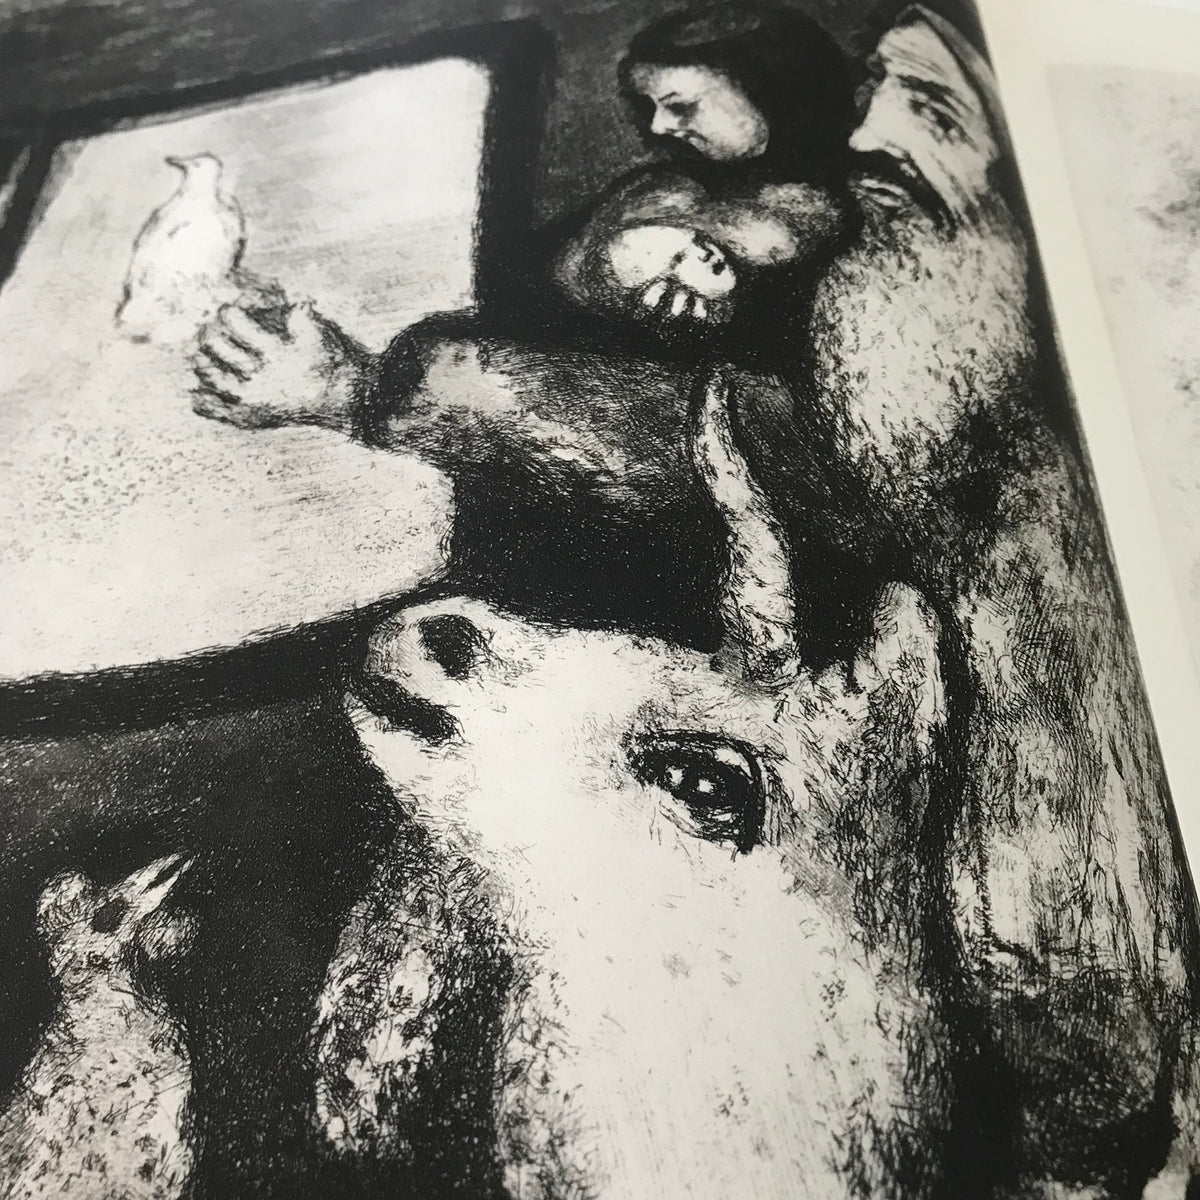 Marc Chagall - &quot;Bible&quot; - Verve, Vol VIII, Nos. 33/34 - 1956